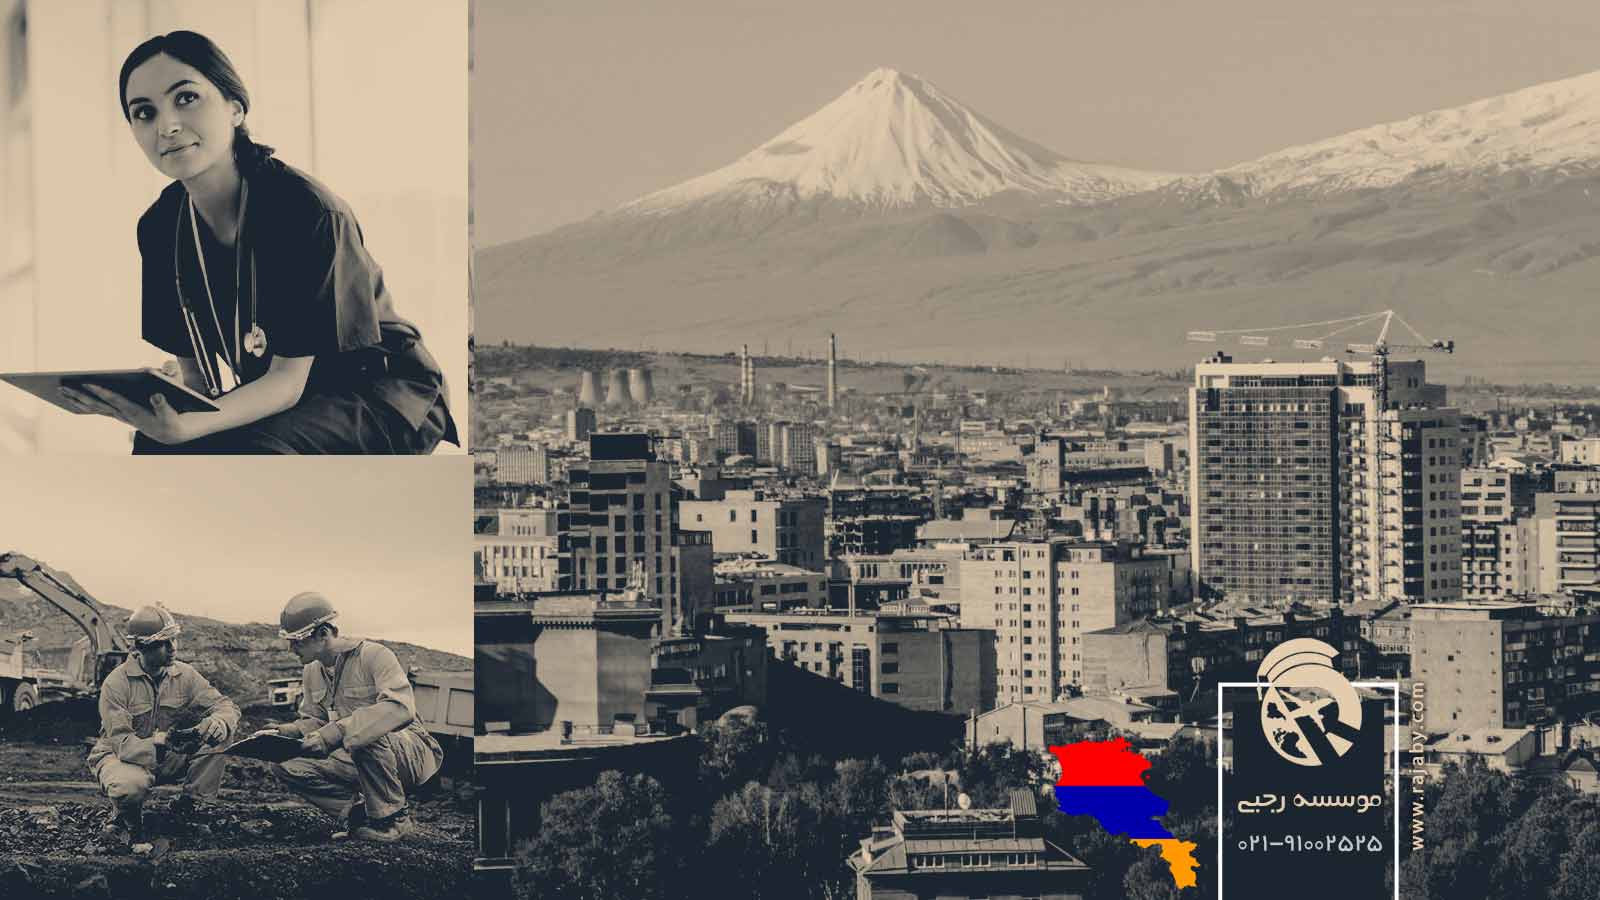 کار در ارمنستان